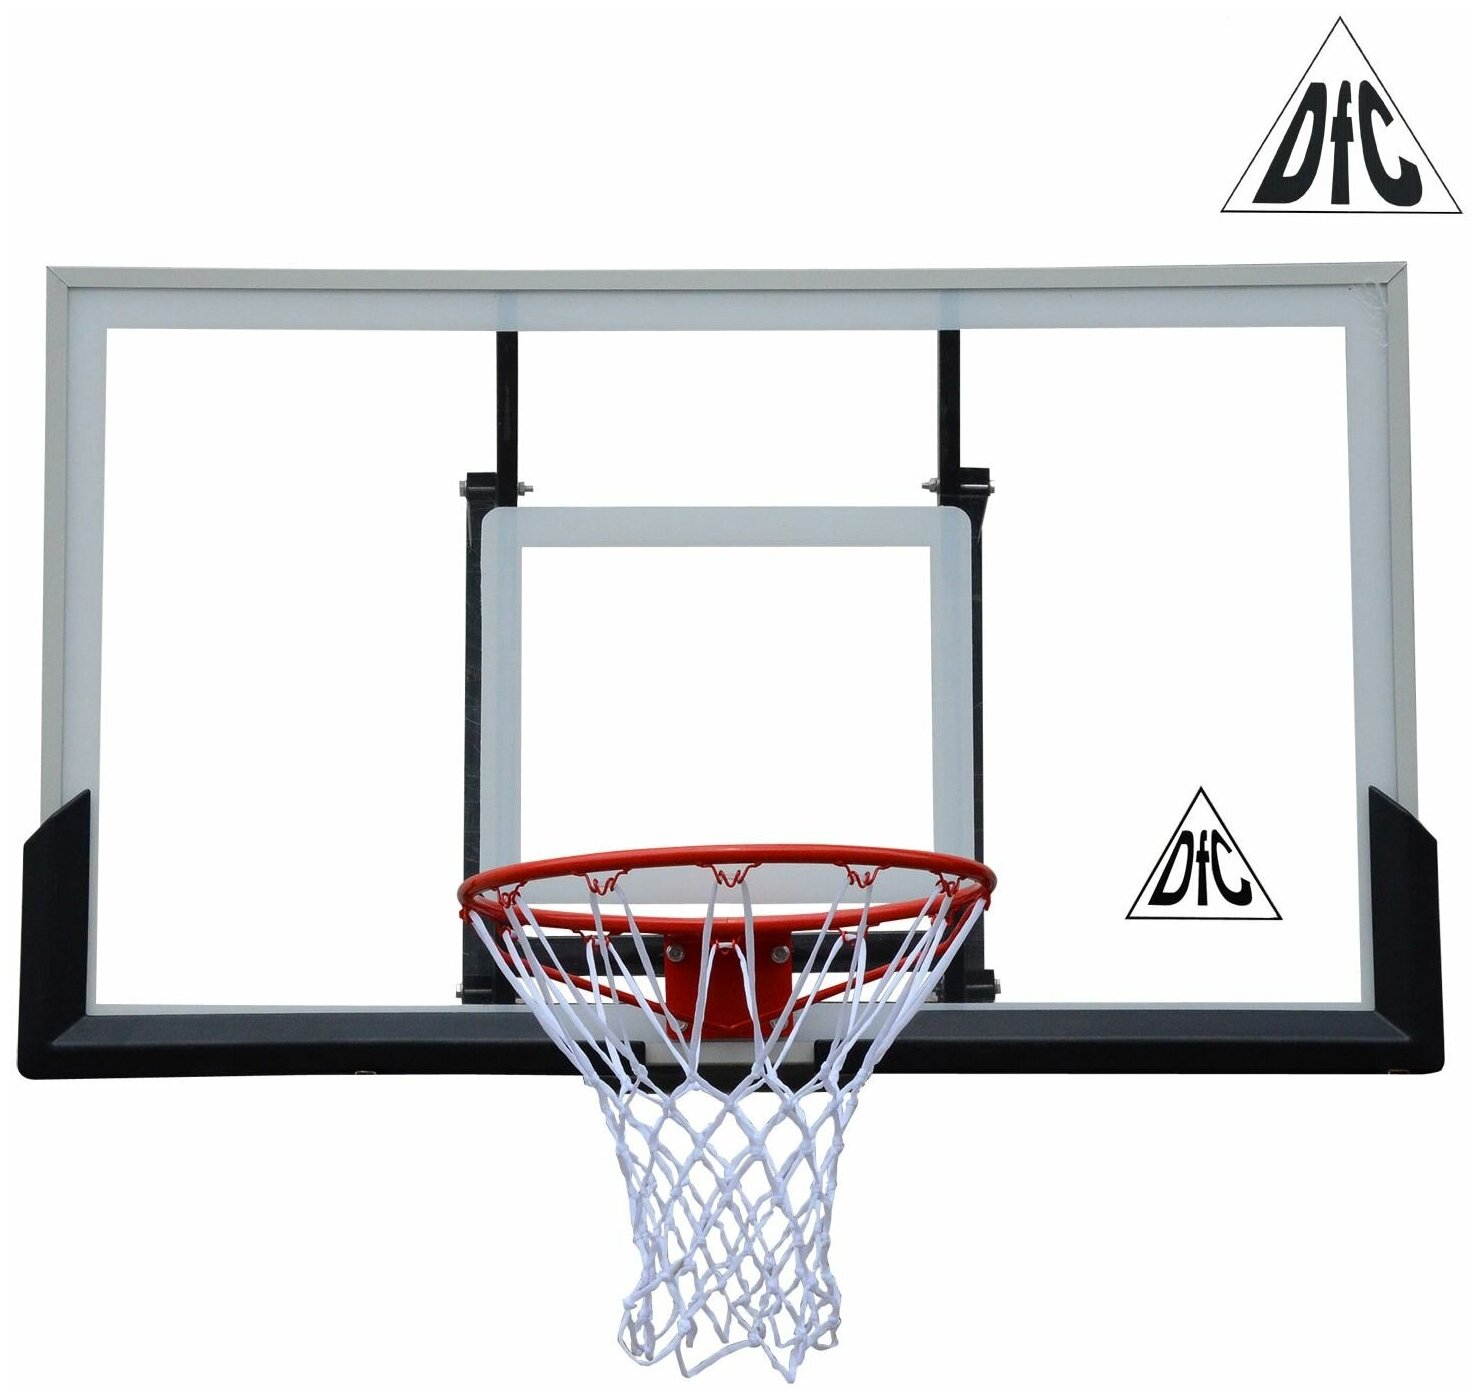 Баскетбольный щит DFC BOARD60A 152x90cm акрил